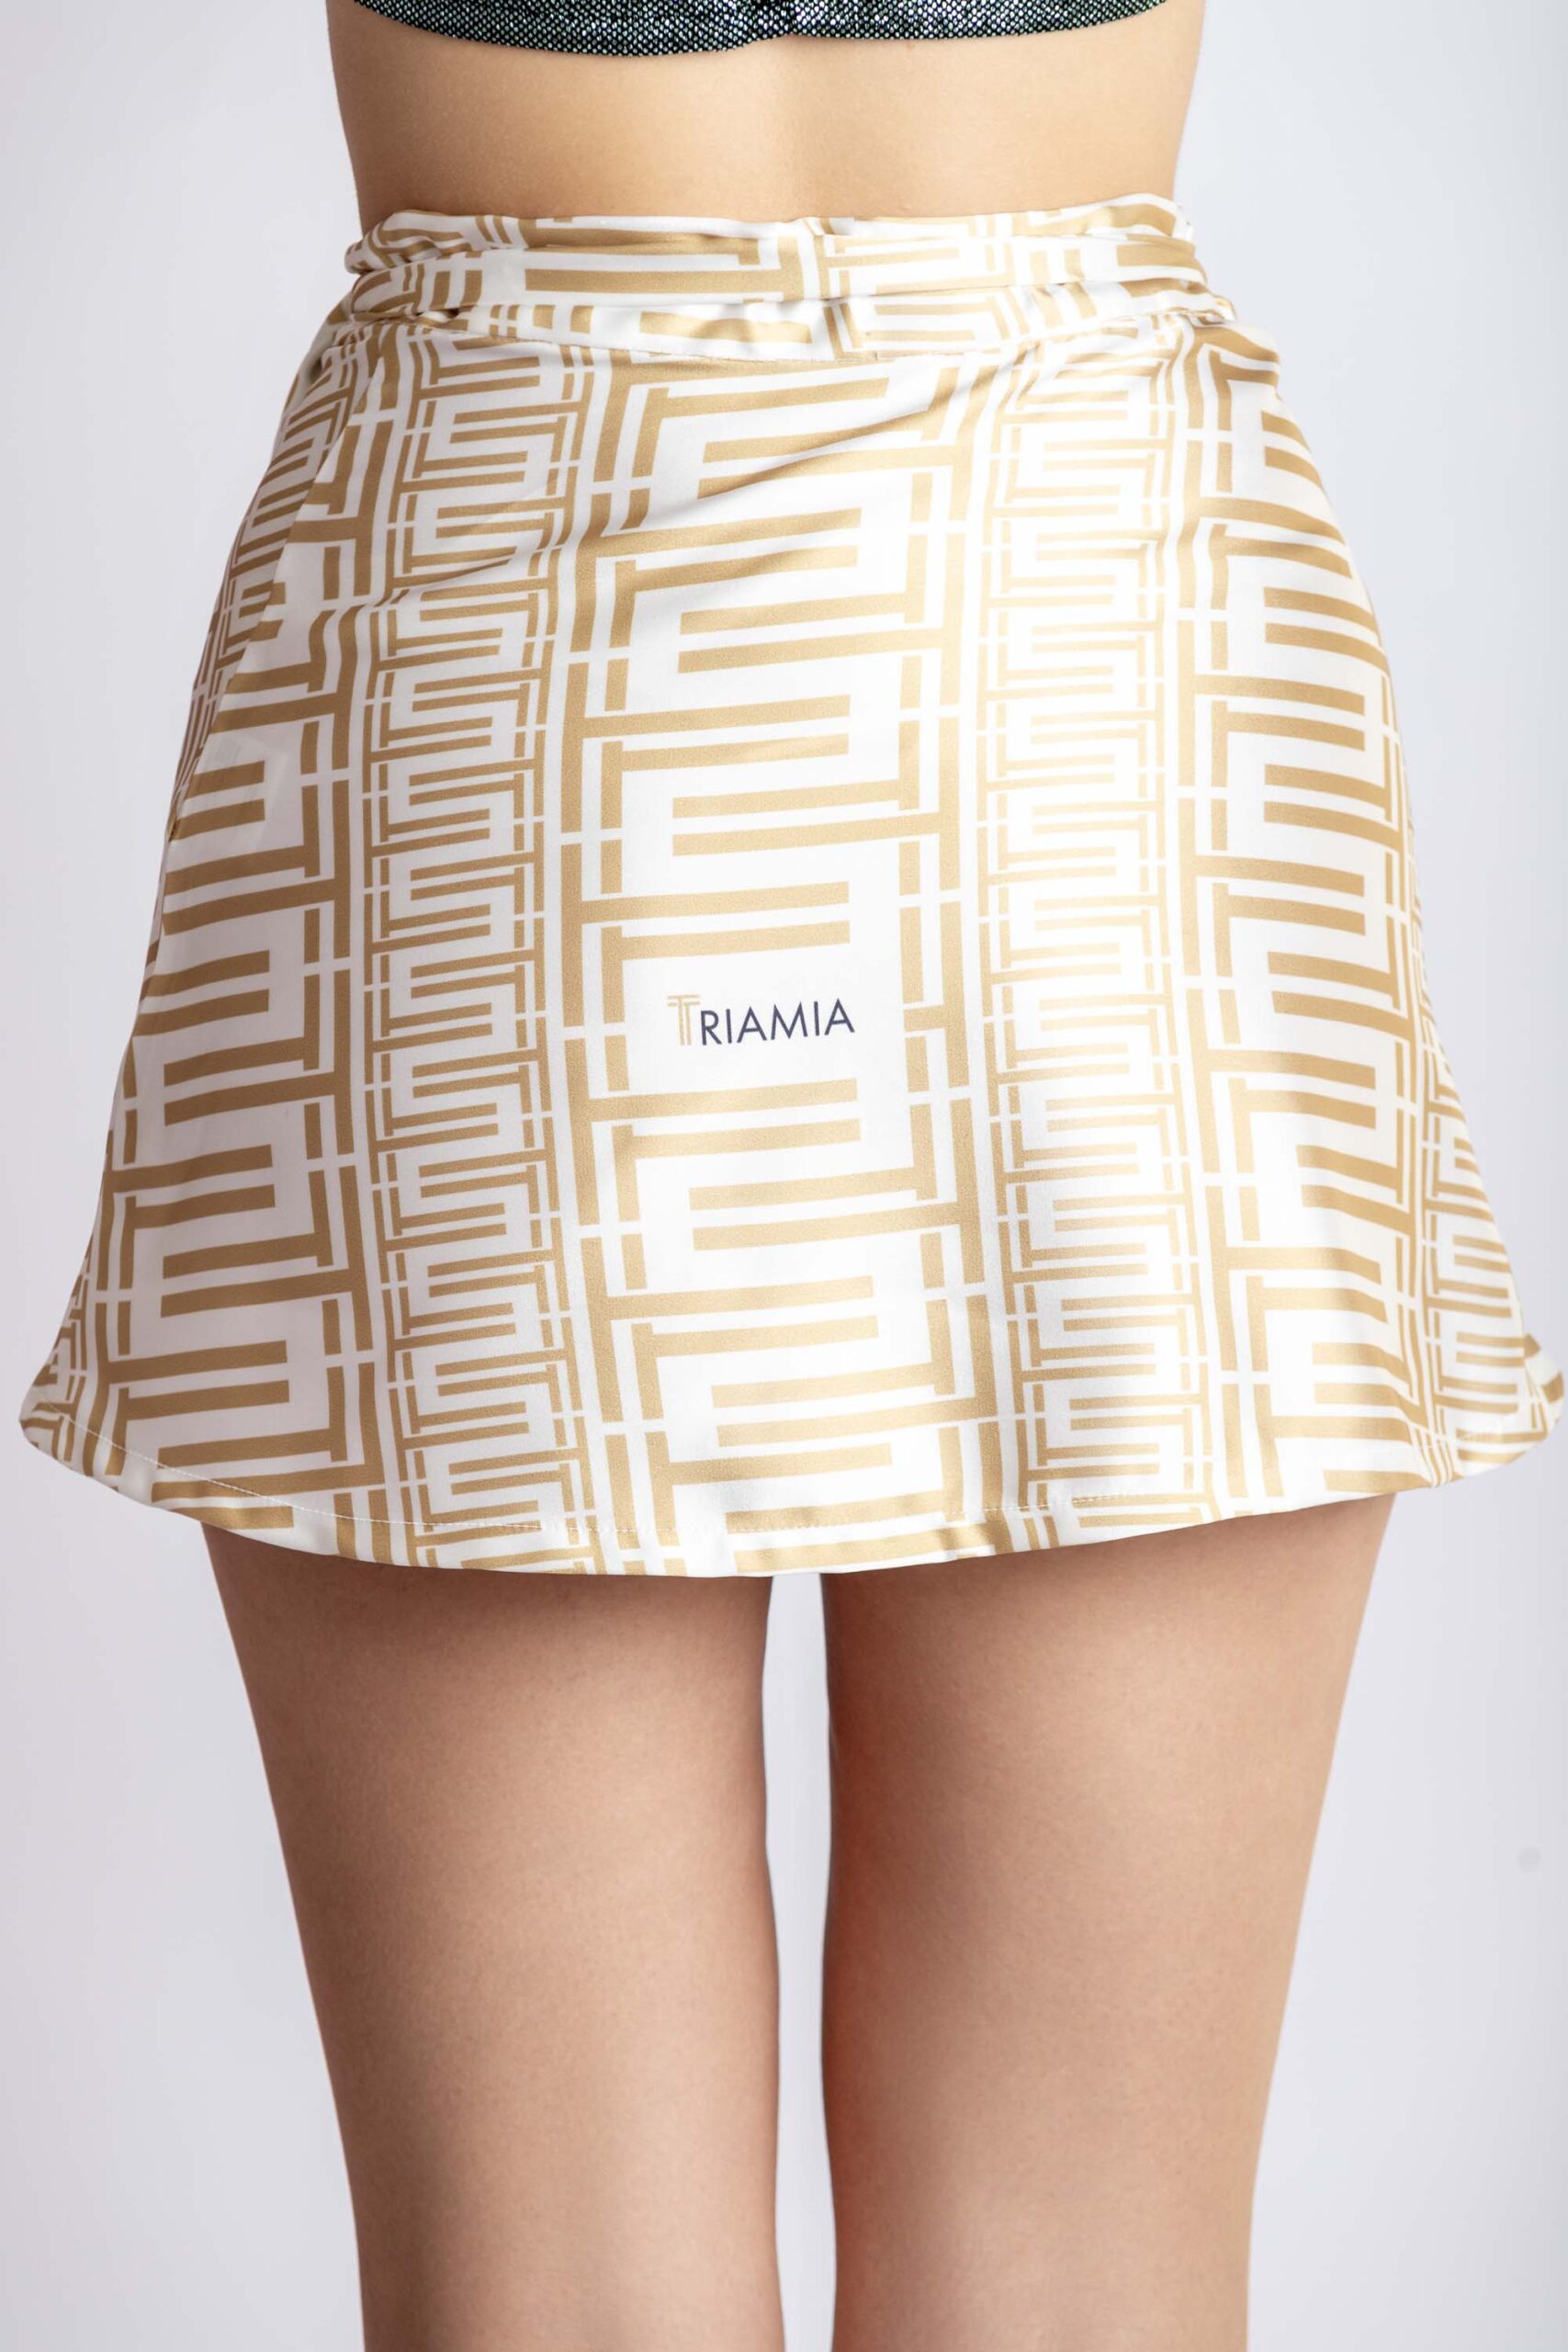 Mini wrap-around skirt, with triamia print on, back,